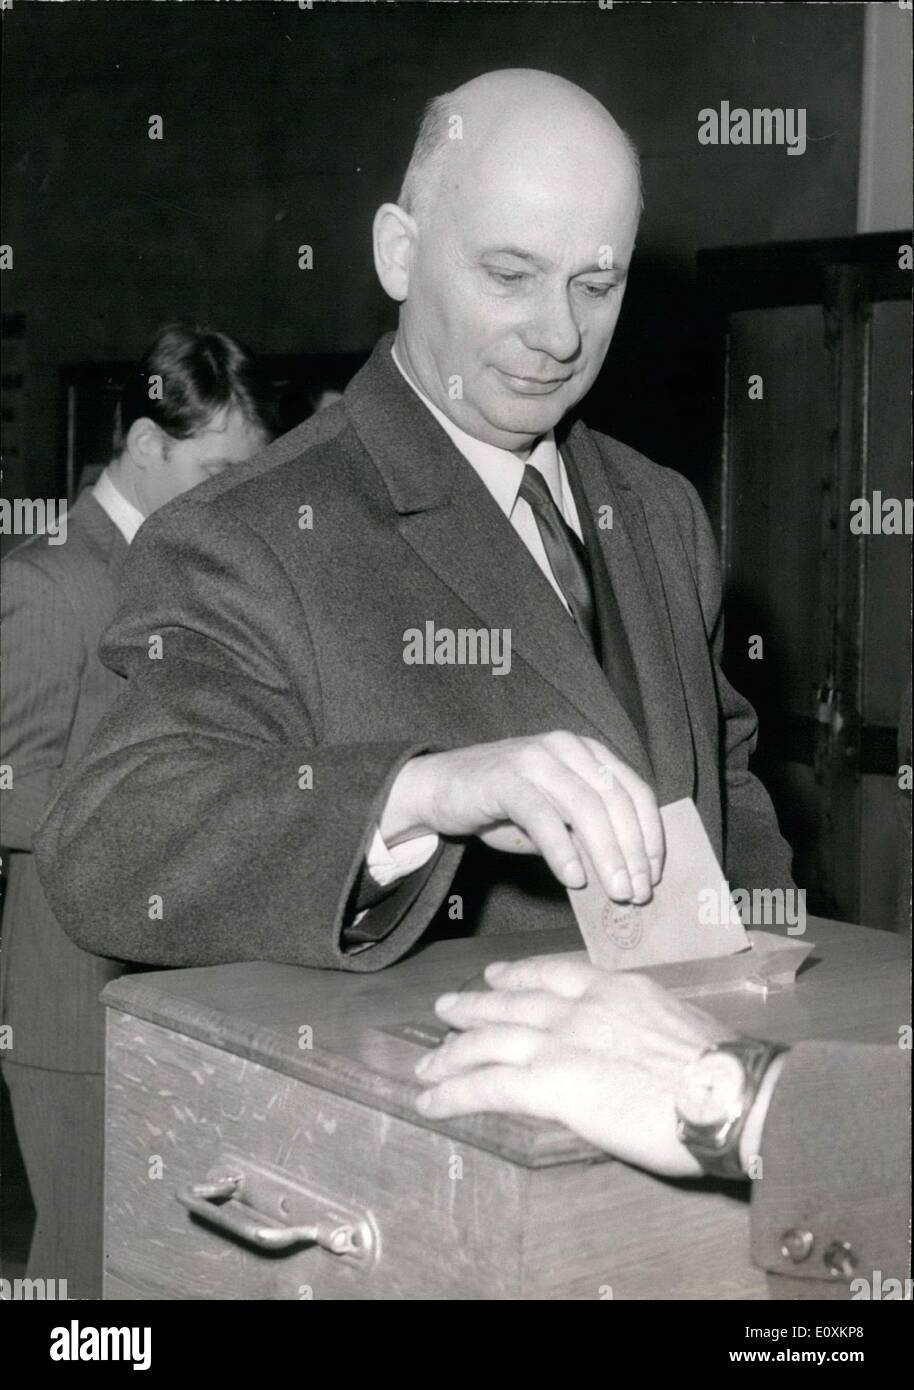 Mars 05, 1967 - Waldeck Rochet, Leader du Parti communiste français, jette son vote à une élection à l'Ecole des garcons à Nanterre. Banque D'Images